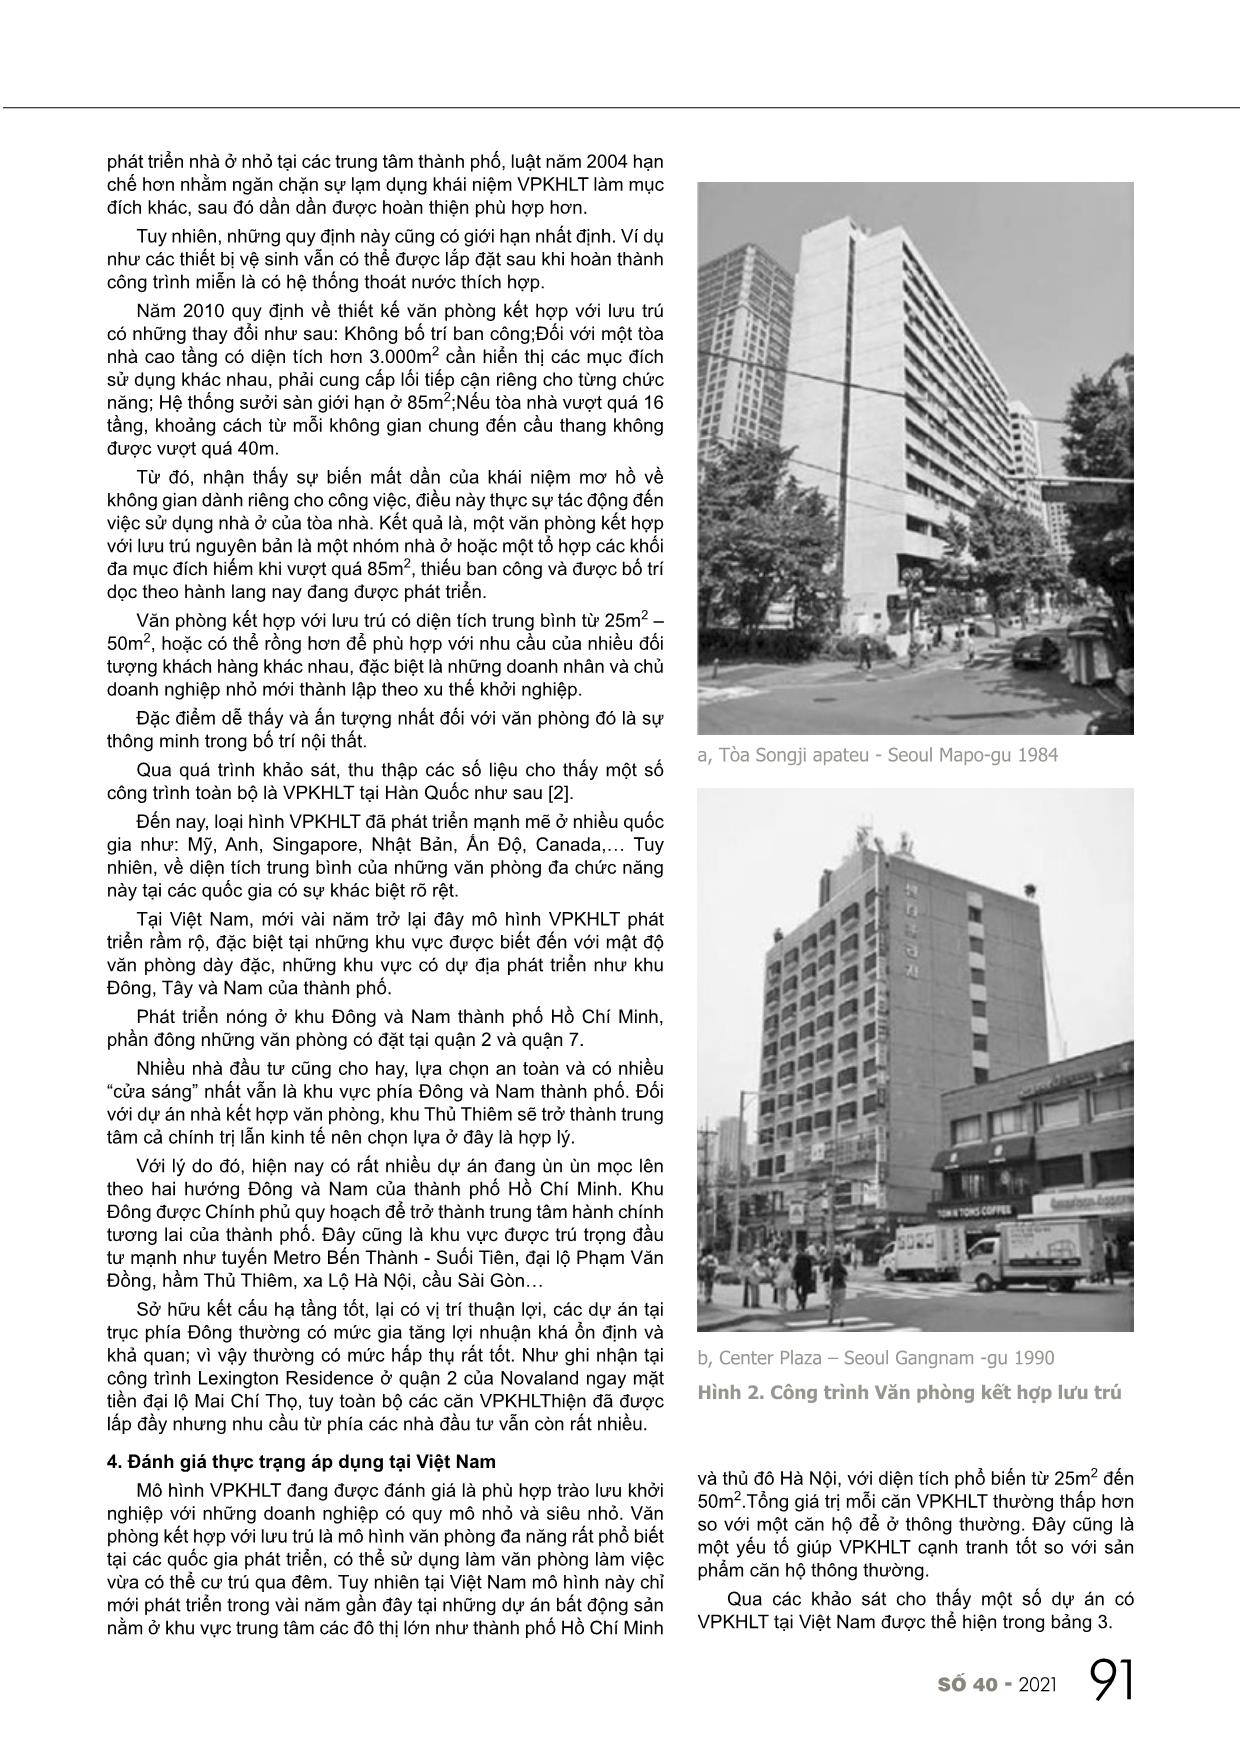 Nghiên cứu, đánh giá việc áp dụng loại hình bất động sản văn phòng kết hợp với lưu trú tại Việt Nam trang 4